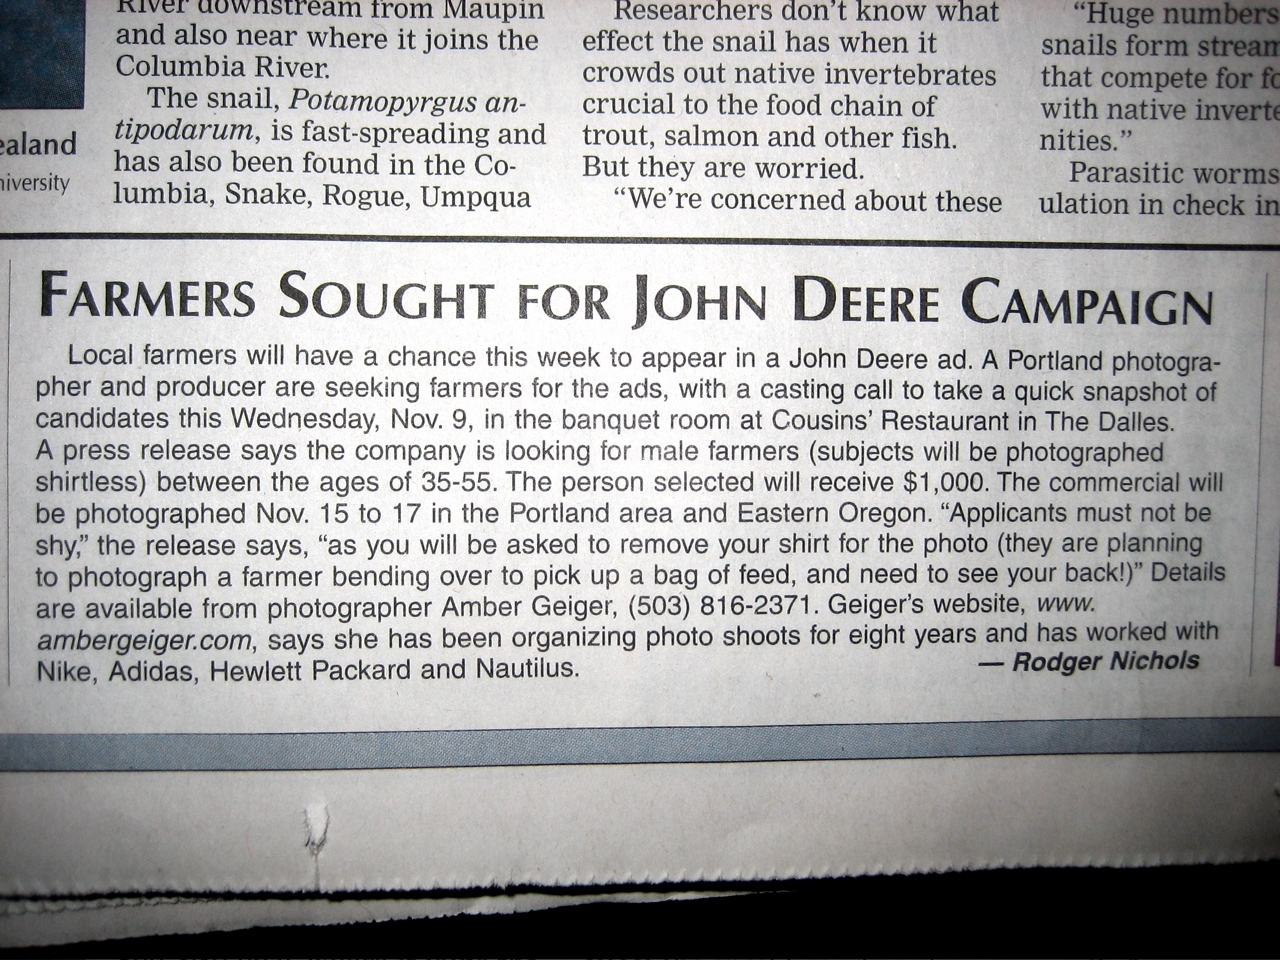 John Deere Wants Shirtless